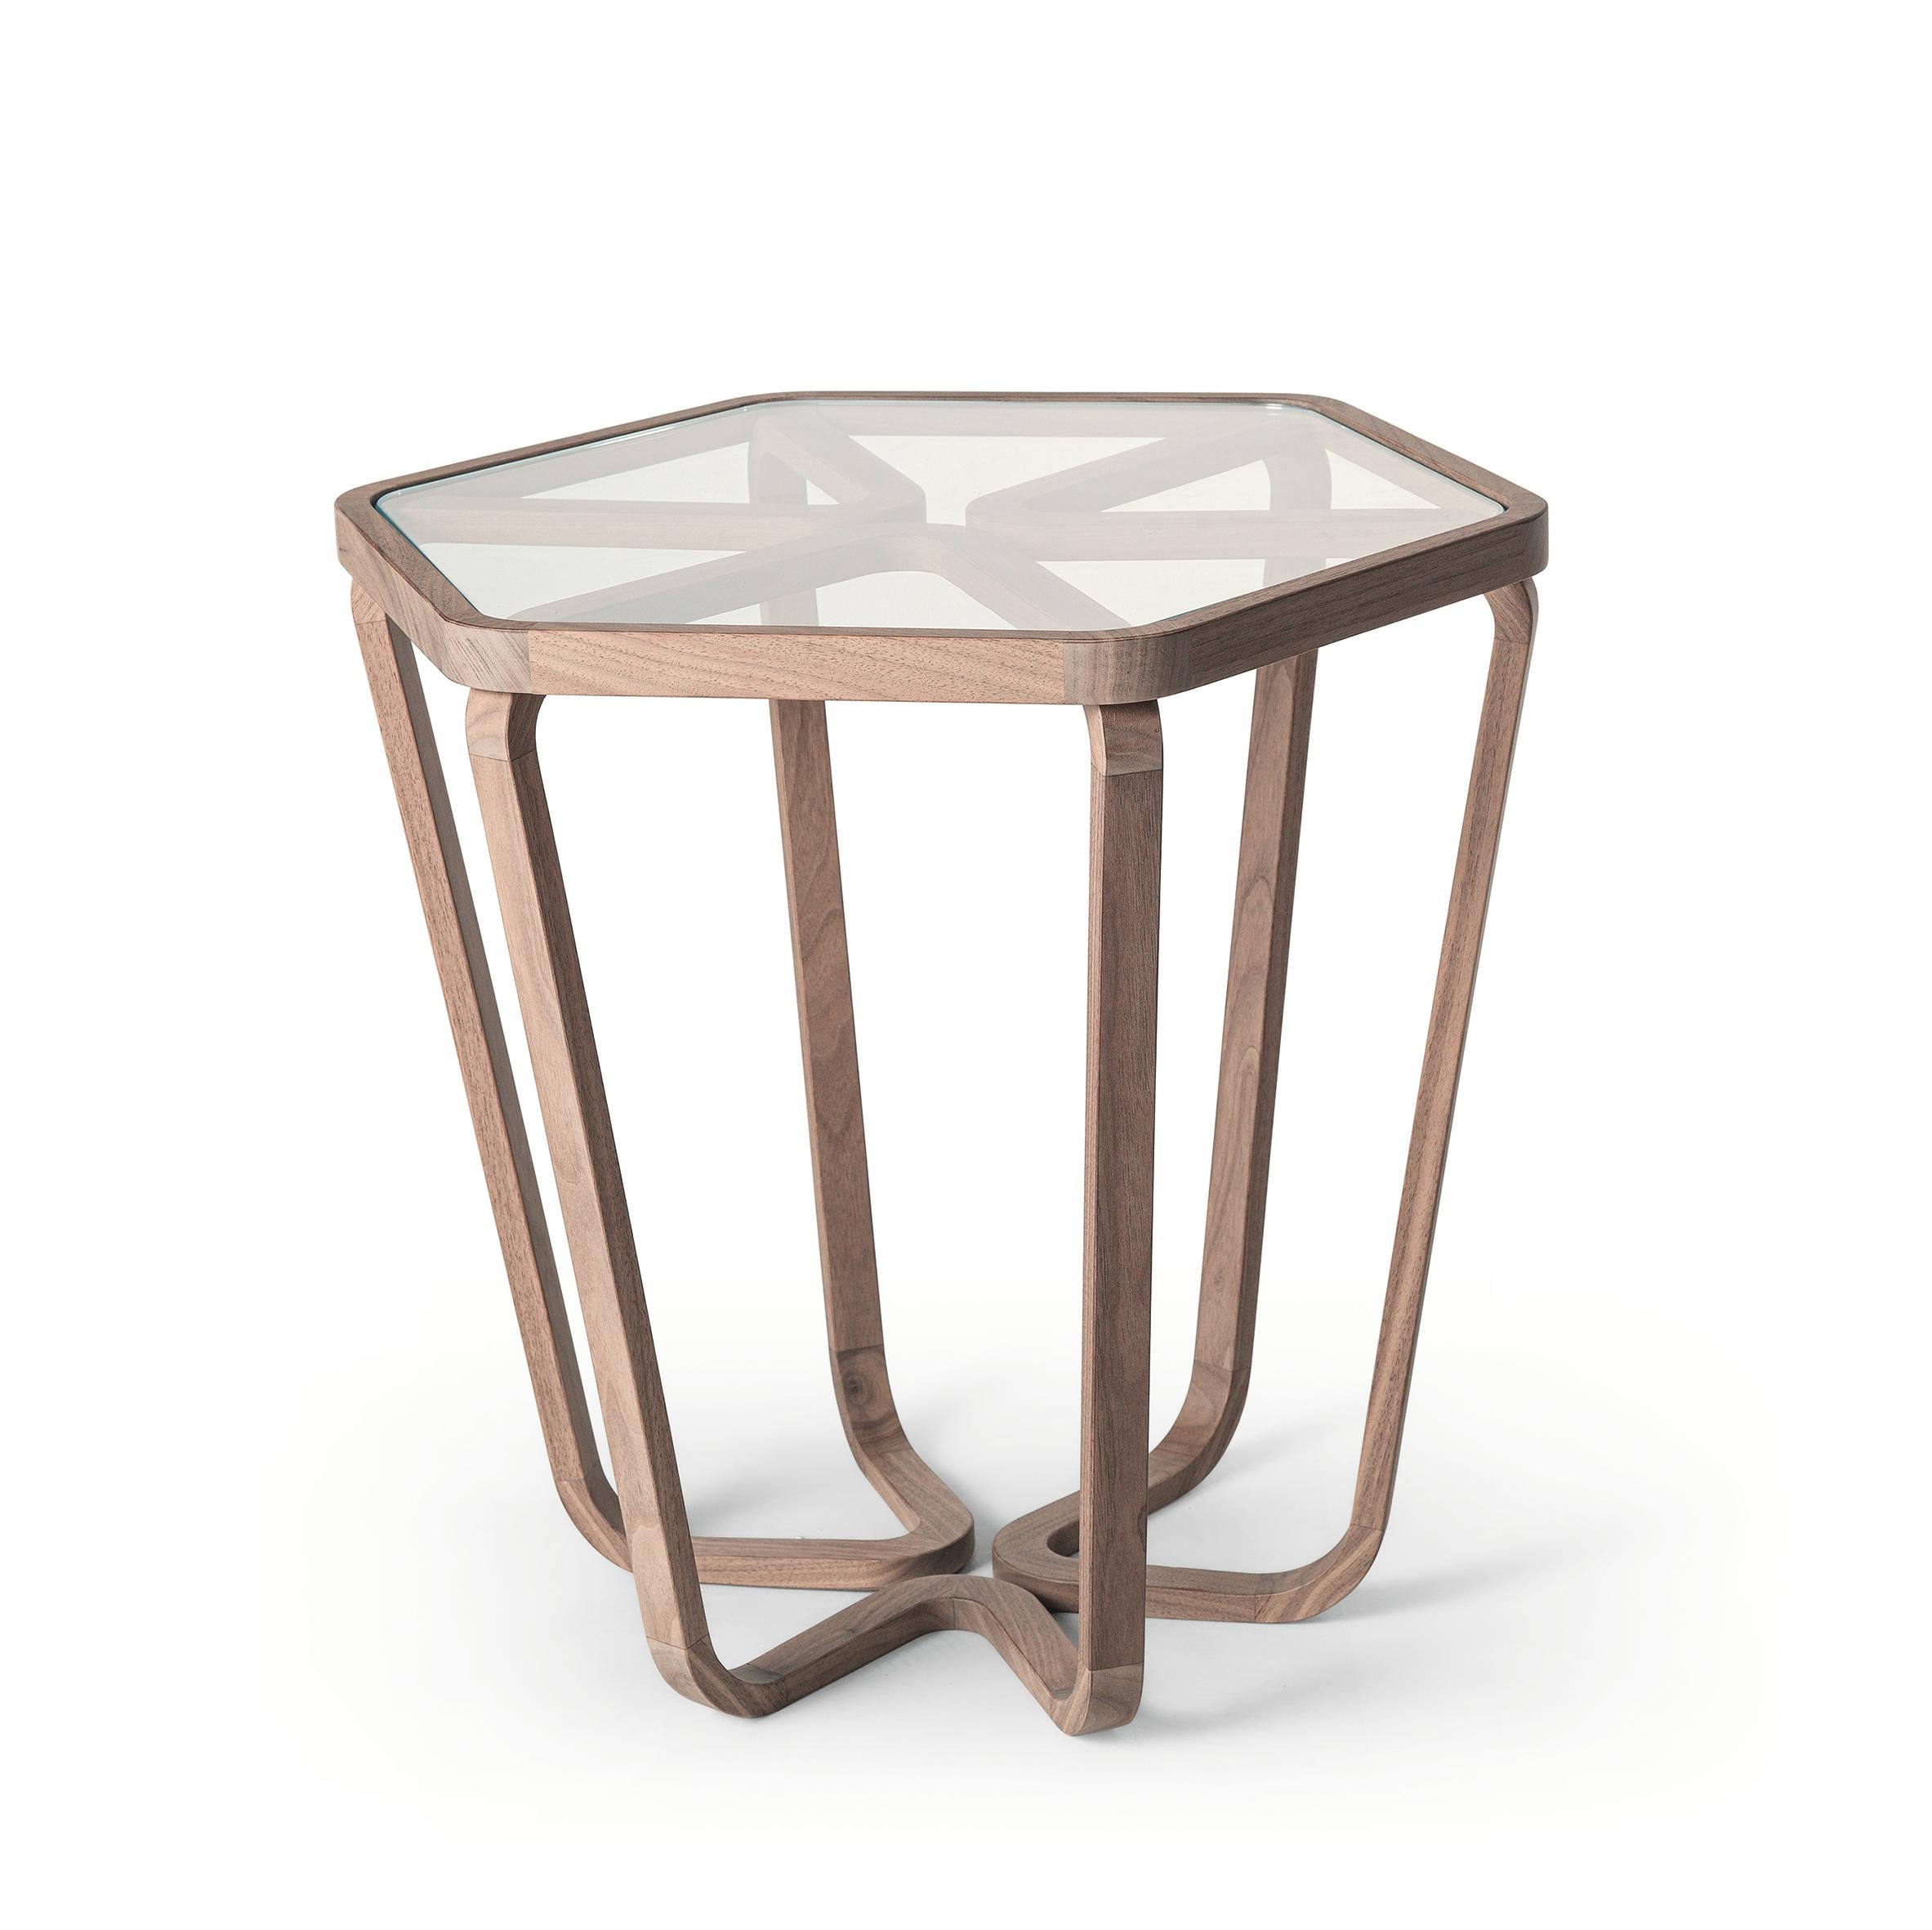 Trifolio est une table basse de forme hexagonale composée d'une structure en bois de noyer massif et d'angles arrondis. Les jambes divergentes créent une illusion de dynamisme qui change selon le point de vue de l'observateur. Les sections des